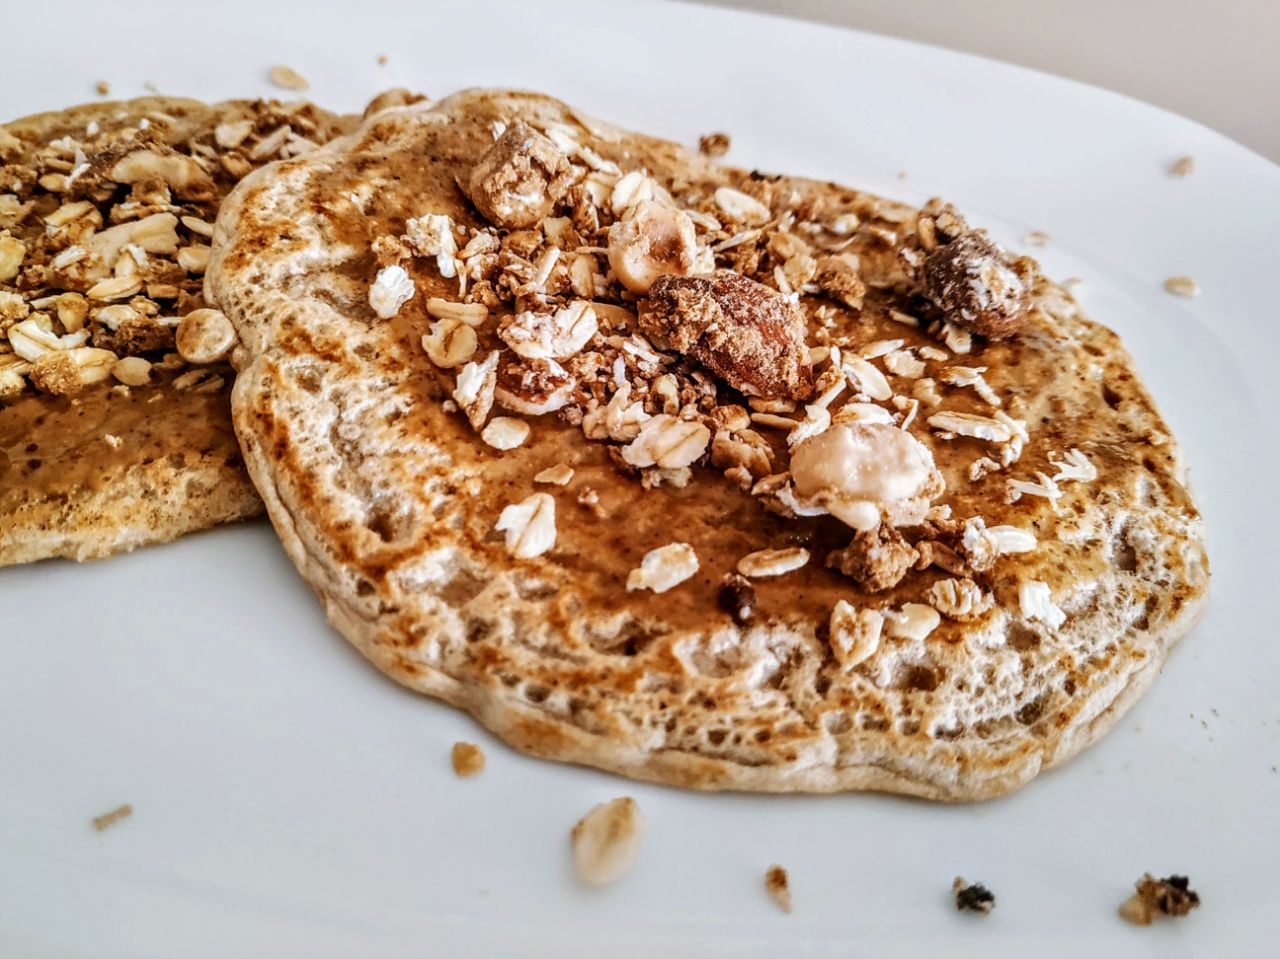 Dolci semplici e leggeri senza latte e senza uova: pancakes proteici con crema al pistacchio e granola con nocciole e mandorle